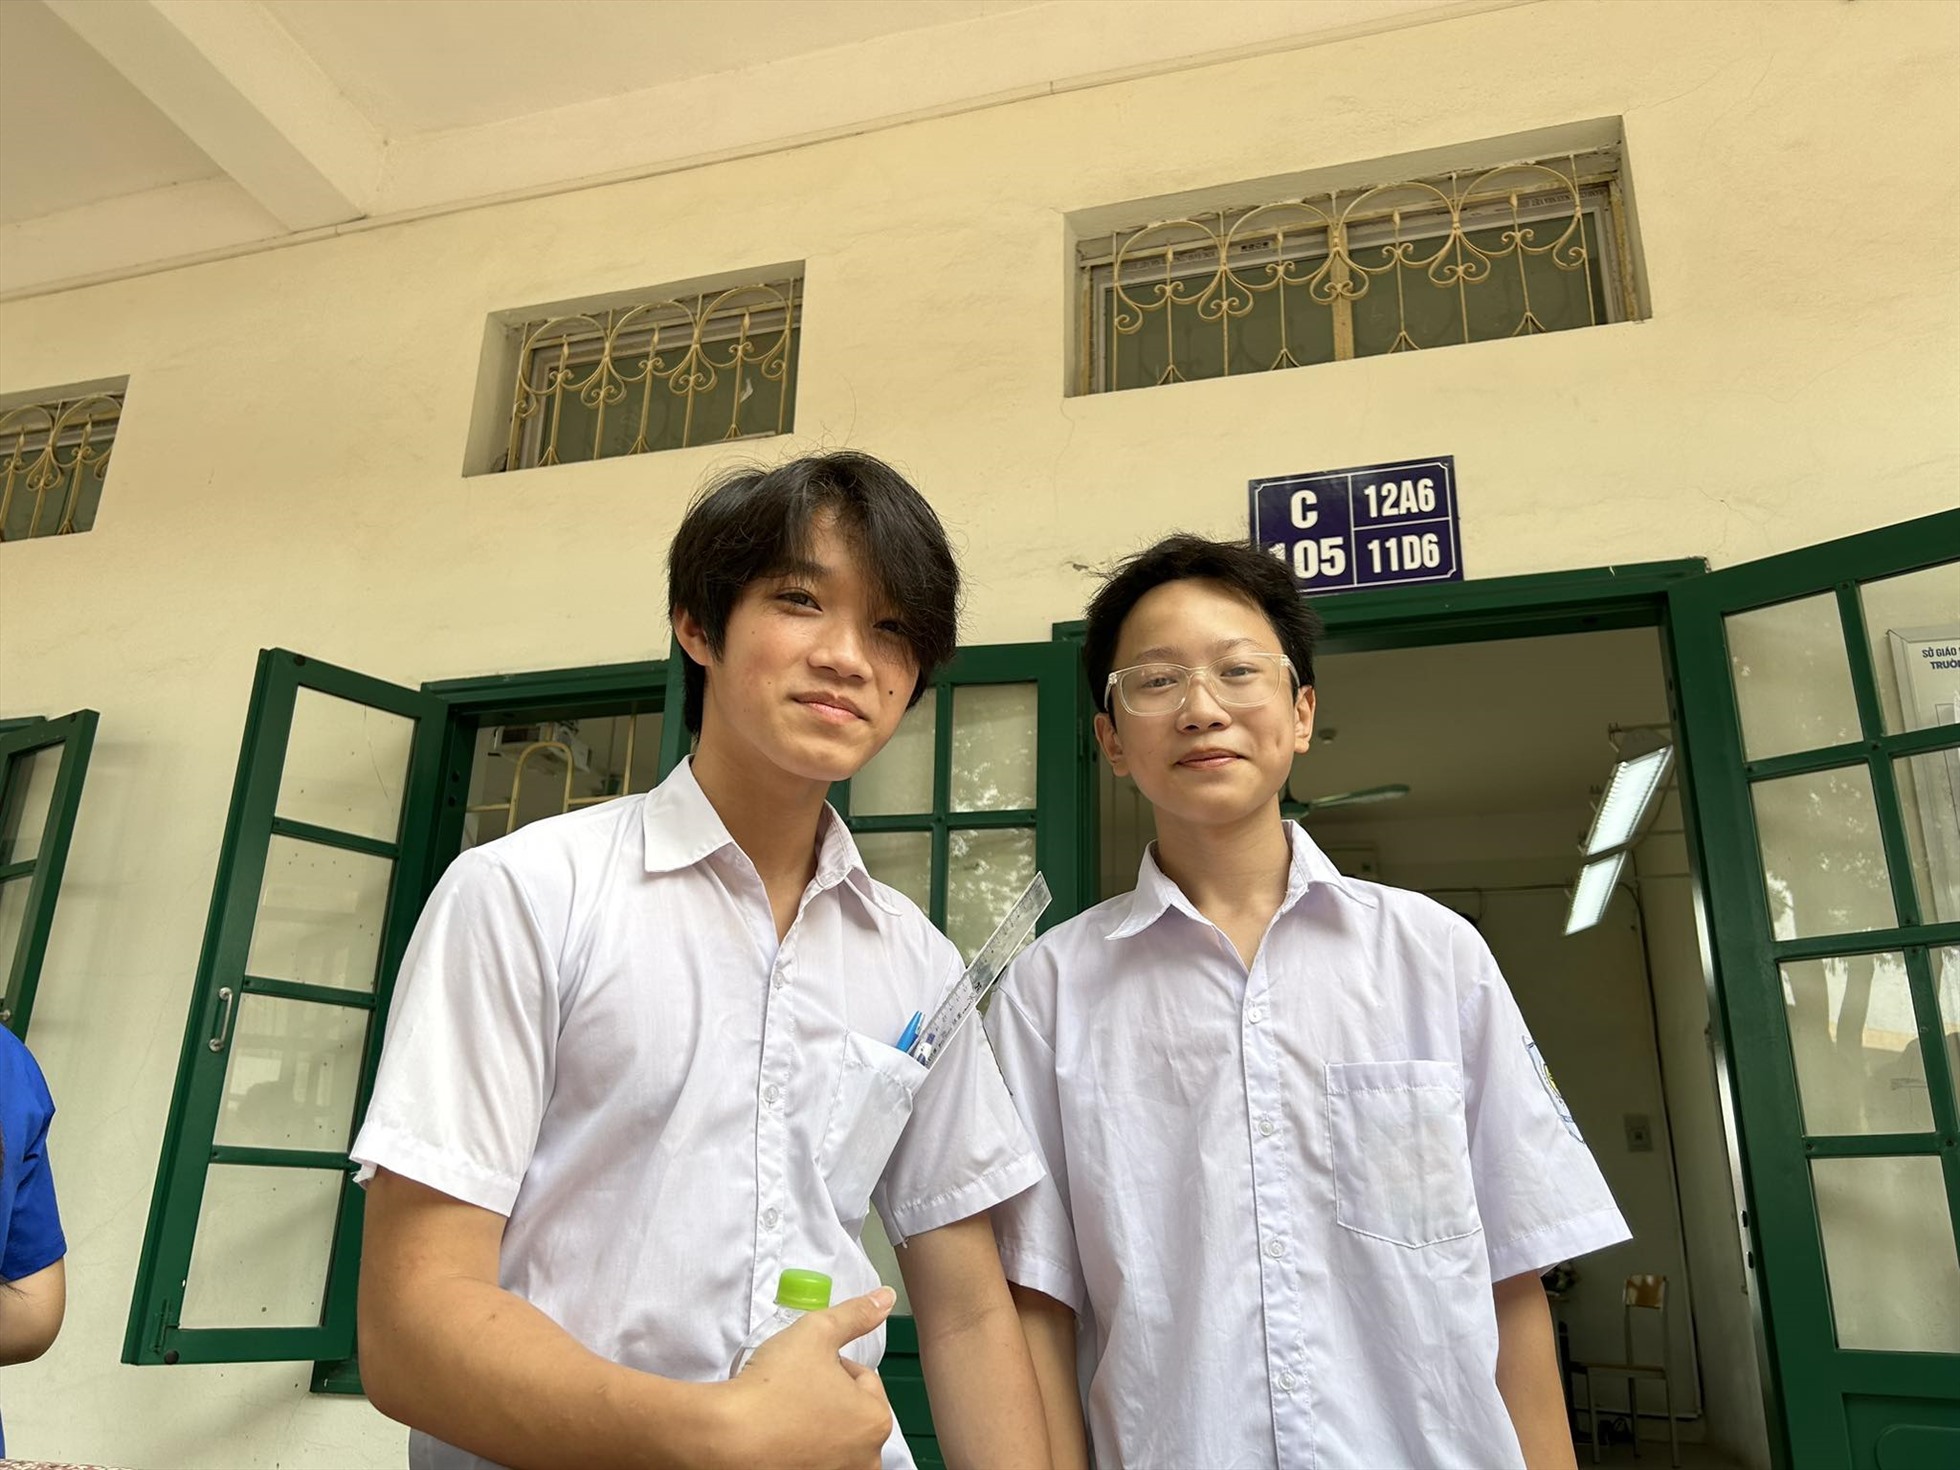 Em Lưu Gia Minh - học Trường THCS Cổ Nhuế 2 (bên trái) đã nhiều lần trải qua cảm giác ôn tập bị mất điện. Những hôm nắng nóng như vậy khiến em mệt mỏi.  “Em hy vọng sẽ không bị mất điện trong những ngày quan trọng này”